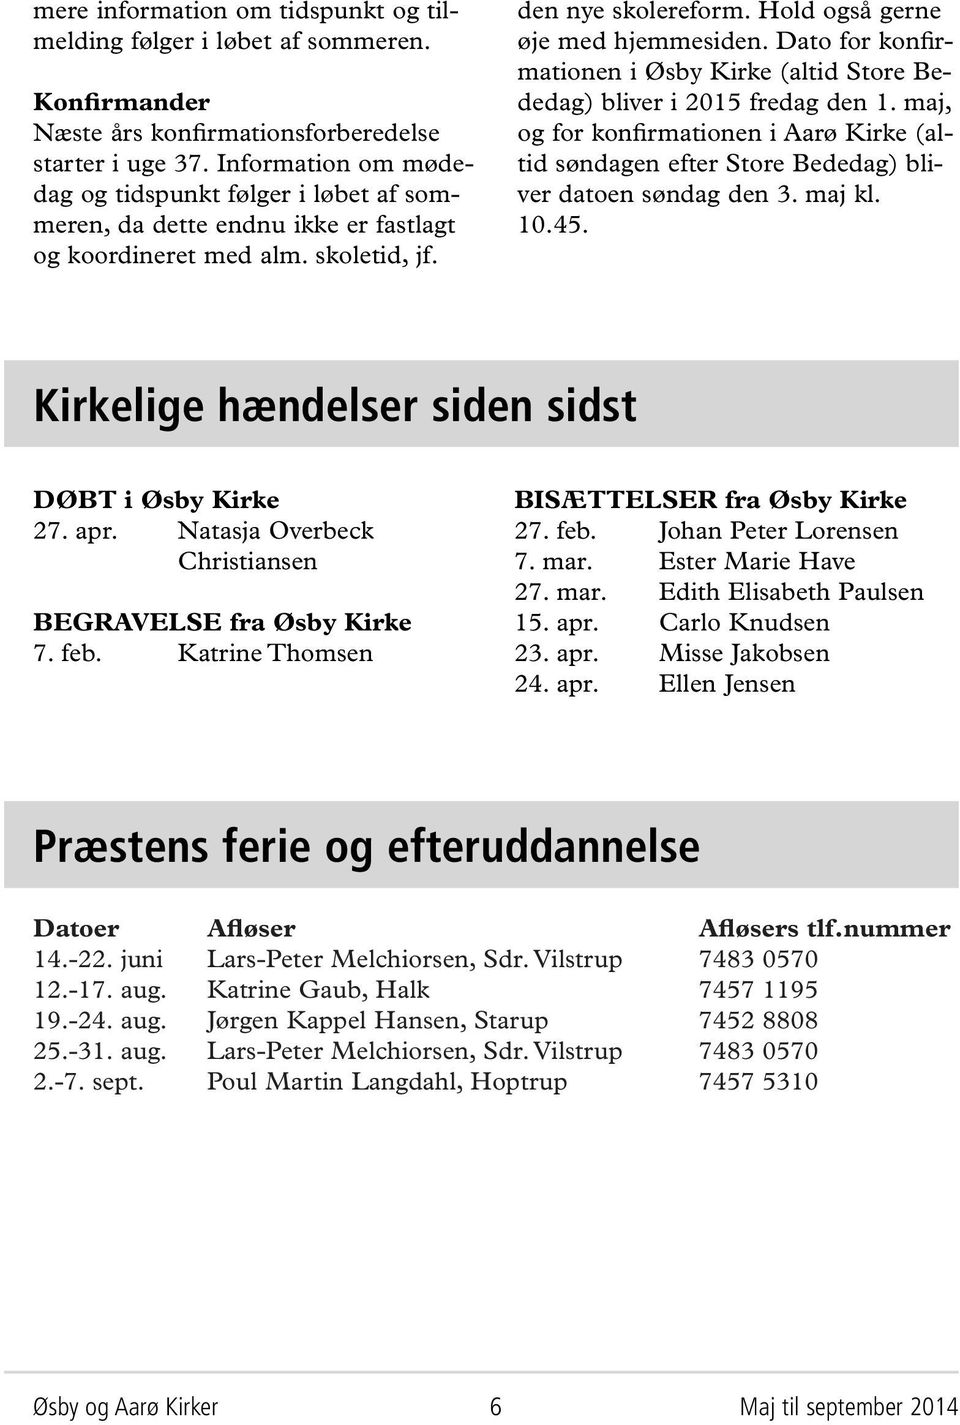 Dato for konfirmationen i Øsby Kirke (altid Store Bededag) bliver i 2015 fredag den 1. maj, og for konfirmationen i Aarø Kirke (altid søndagen efter Store Bededag) bliver datoen søndag den 3. maj kl.